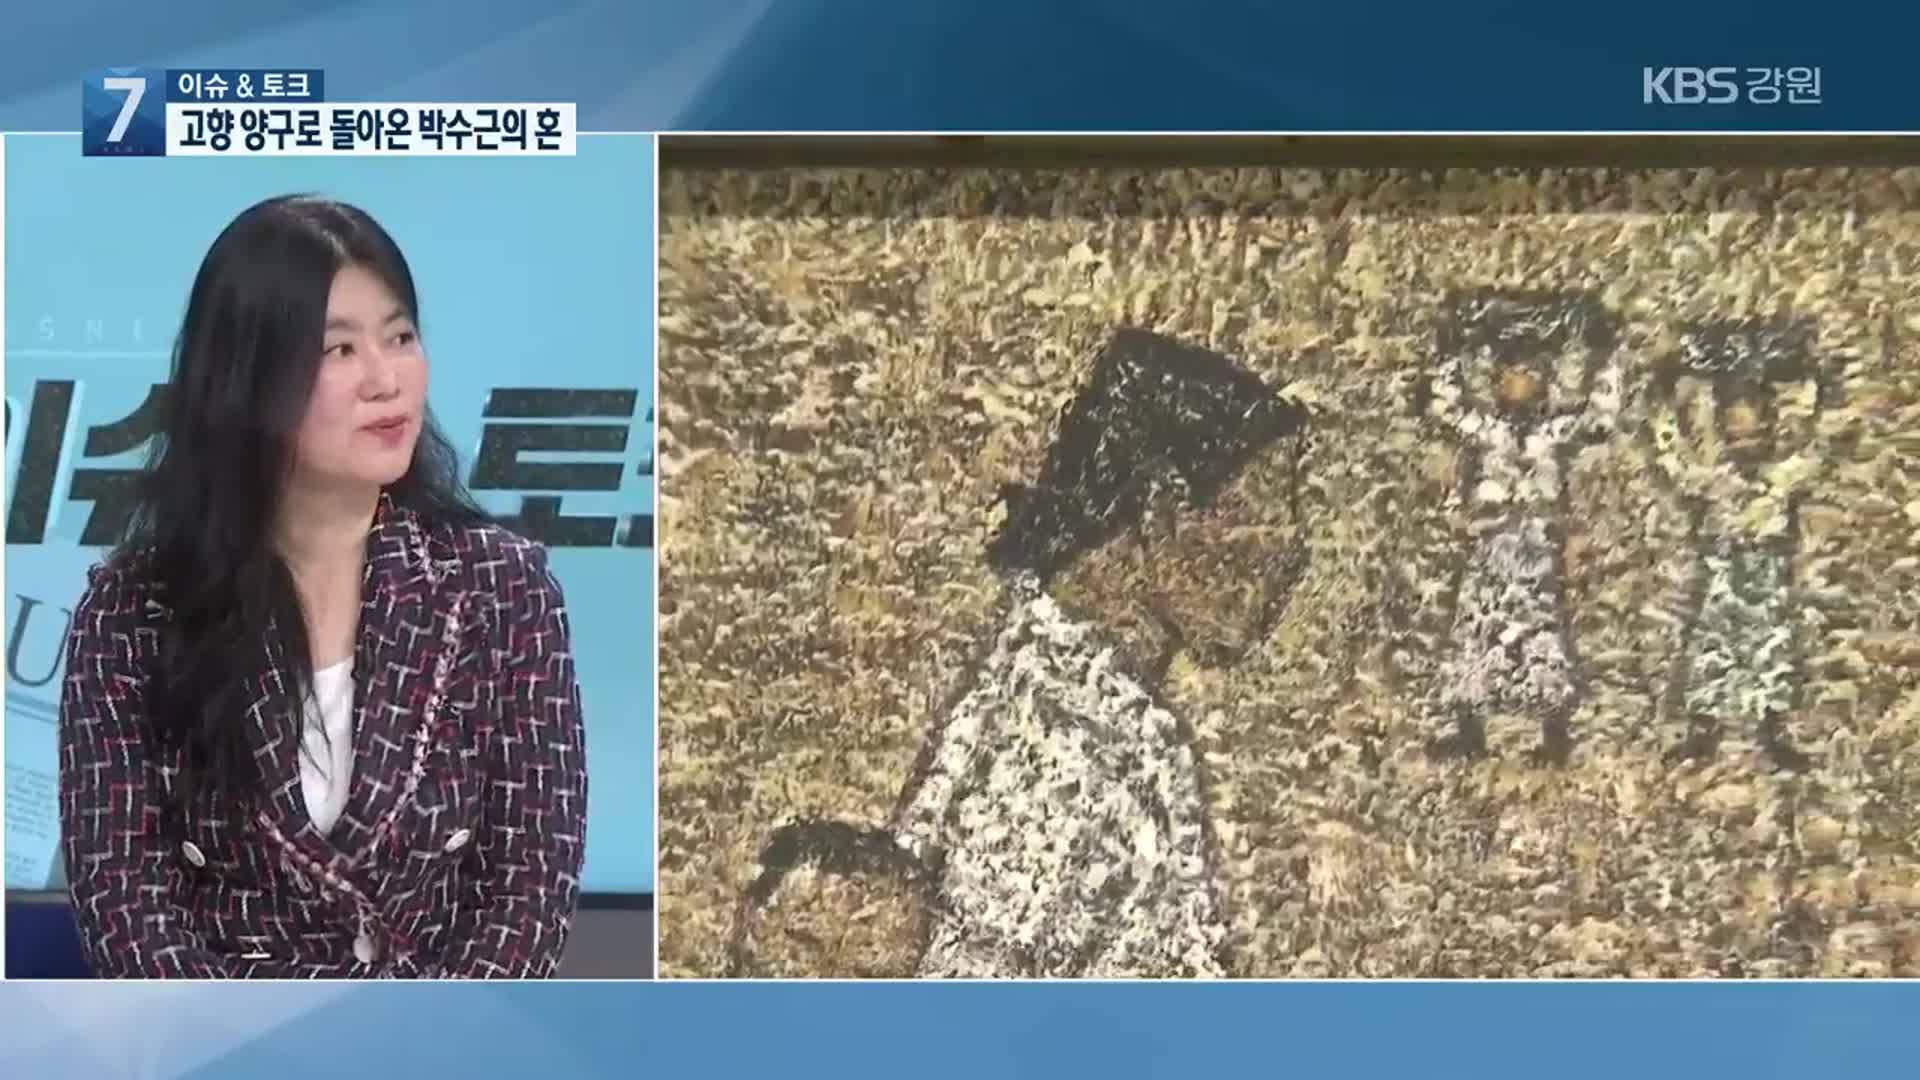 [이슈&토크] 고향 양구로 돌아온 박수근의 혼